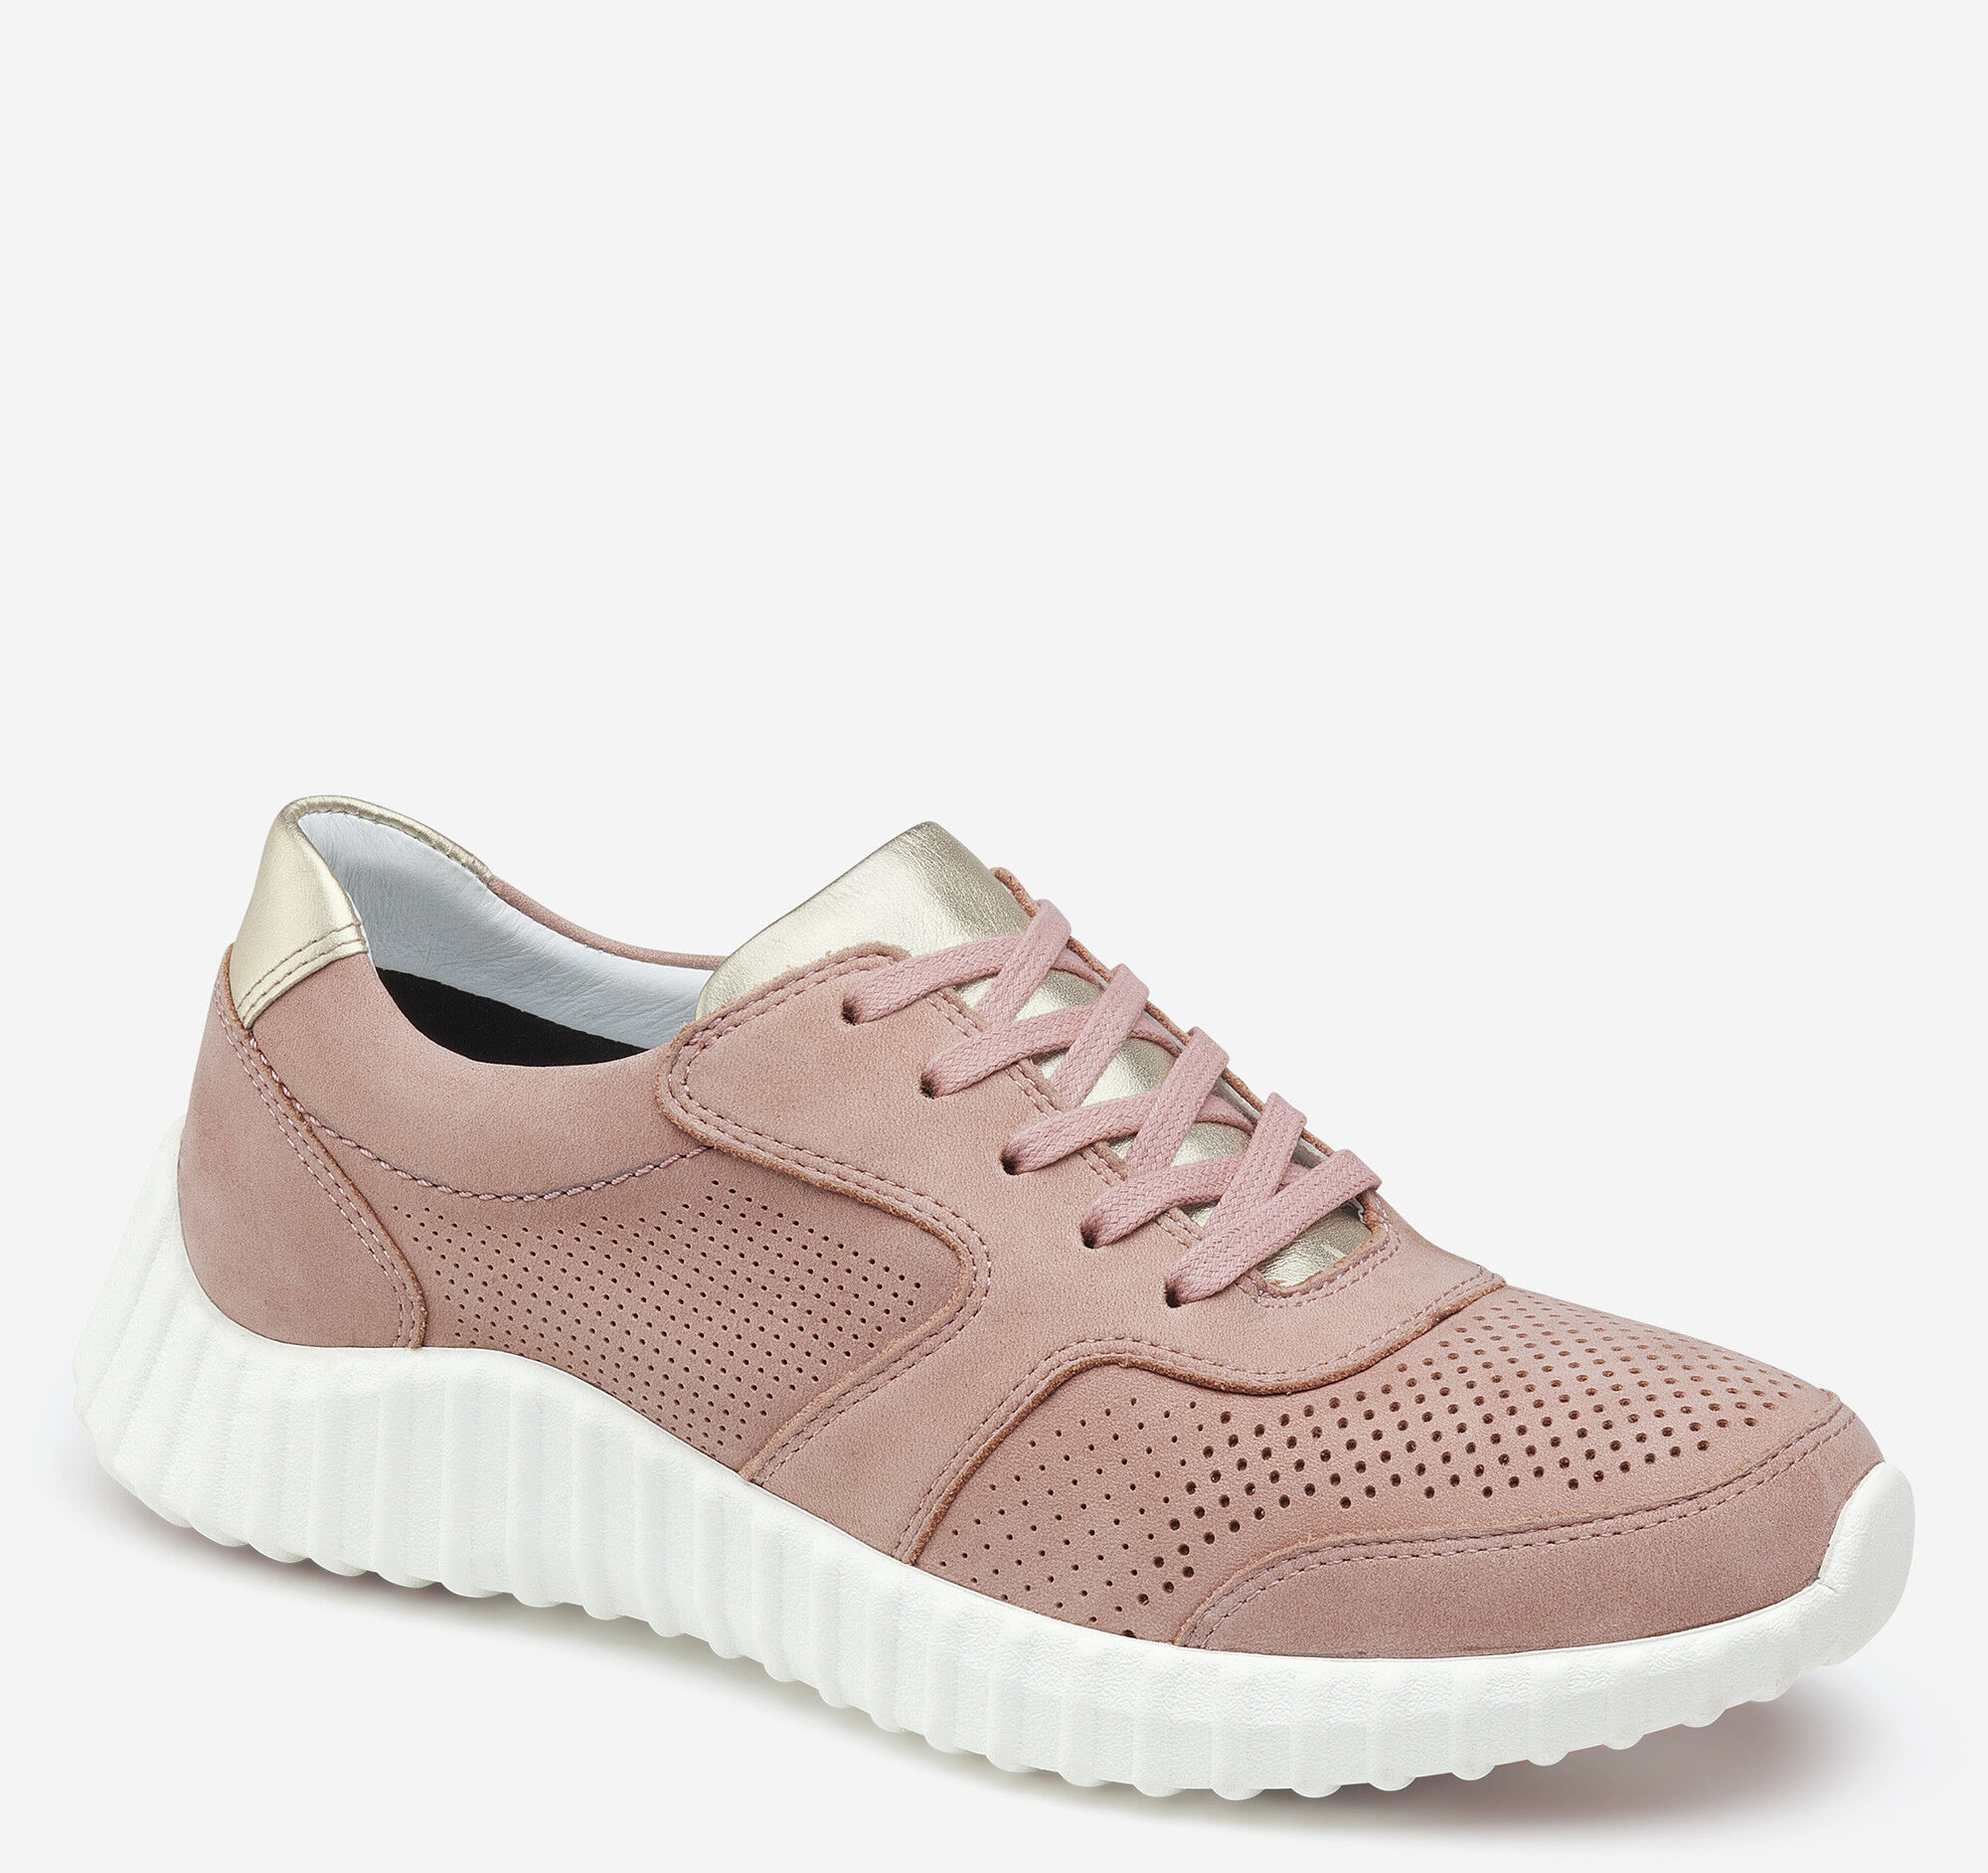 adidas women's cloudfoam pure running shoe